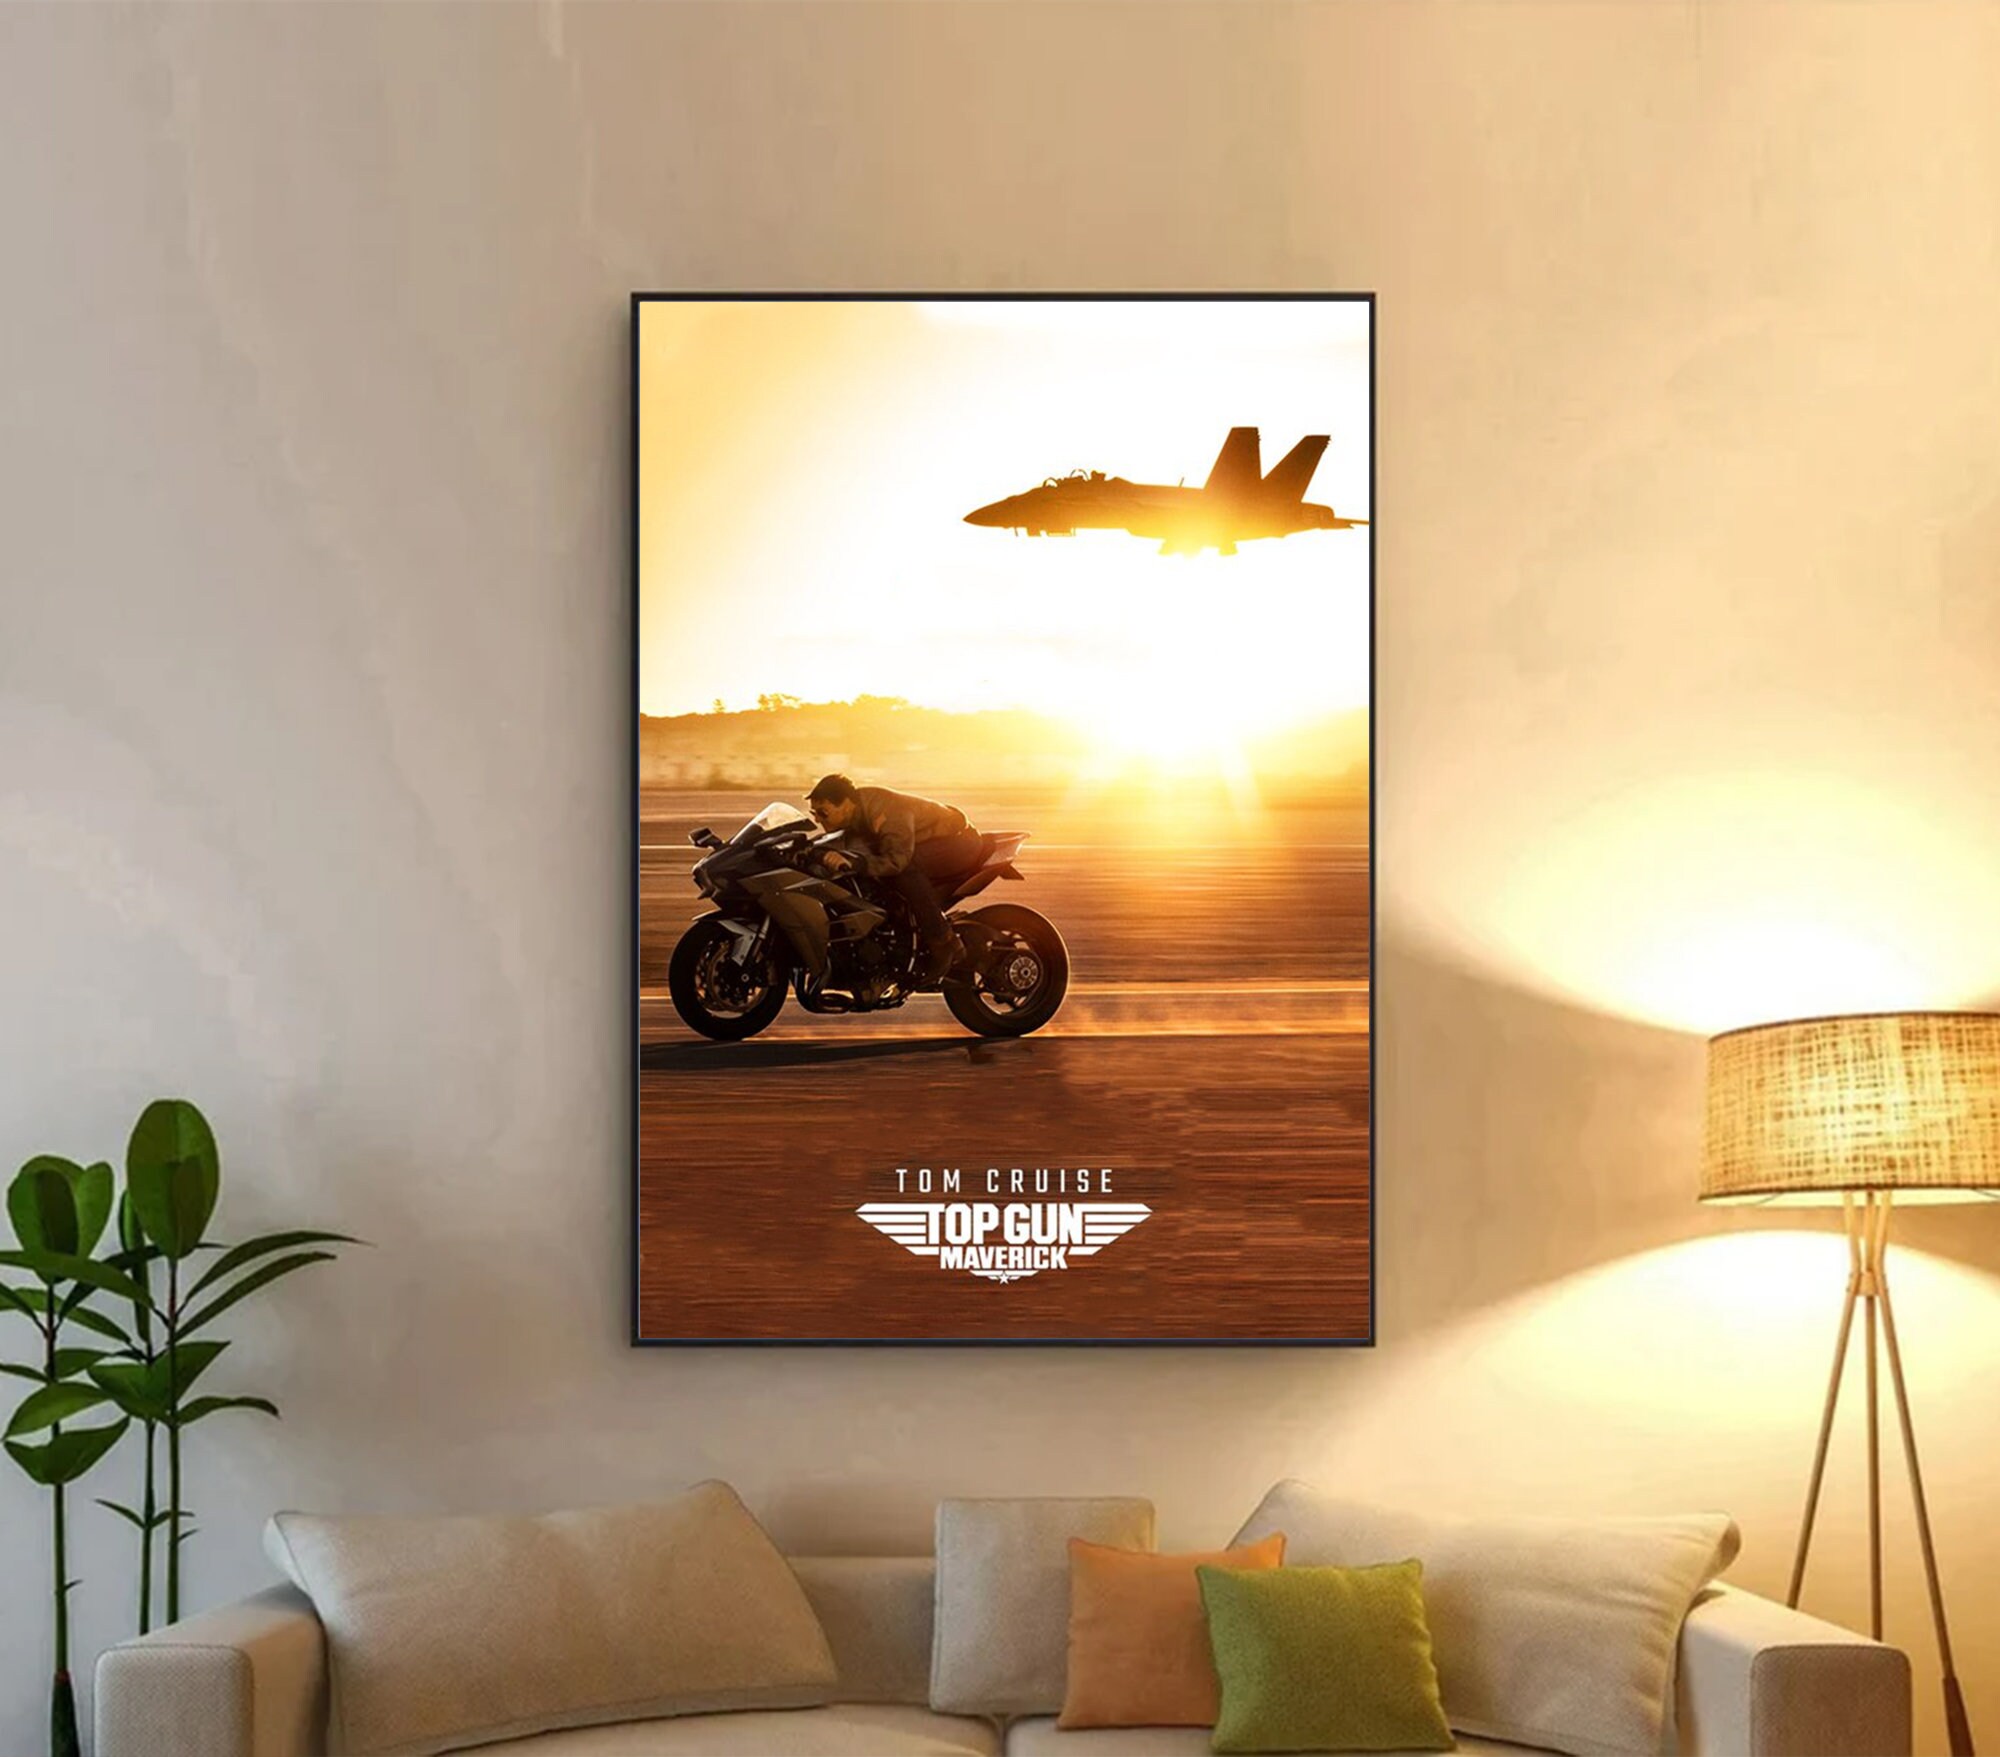 Tom Cruise Poster, Top Gun: Maverick 2022 poster, Top Gun Maverick Movies Poster